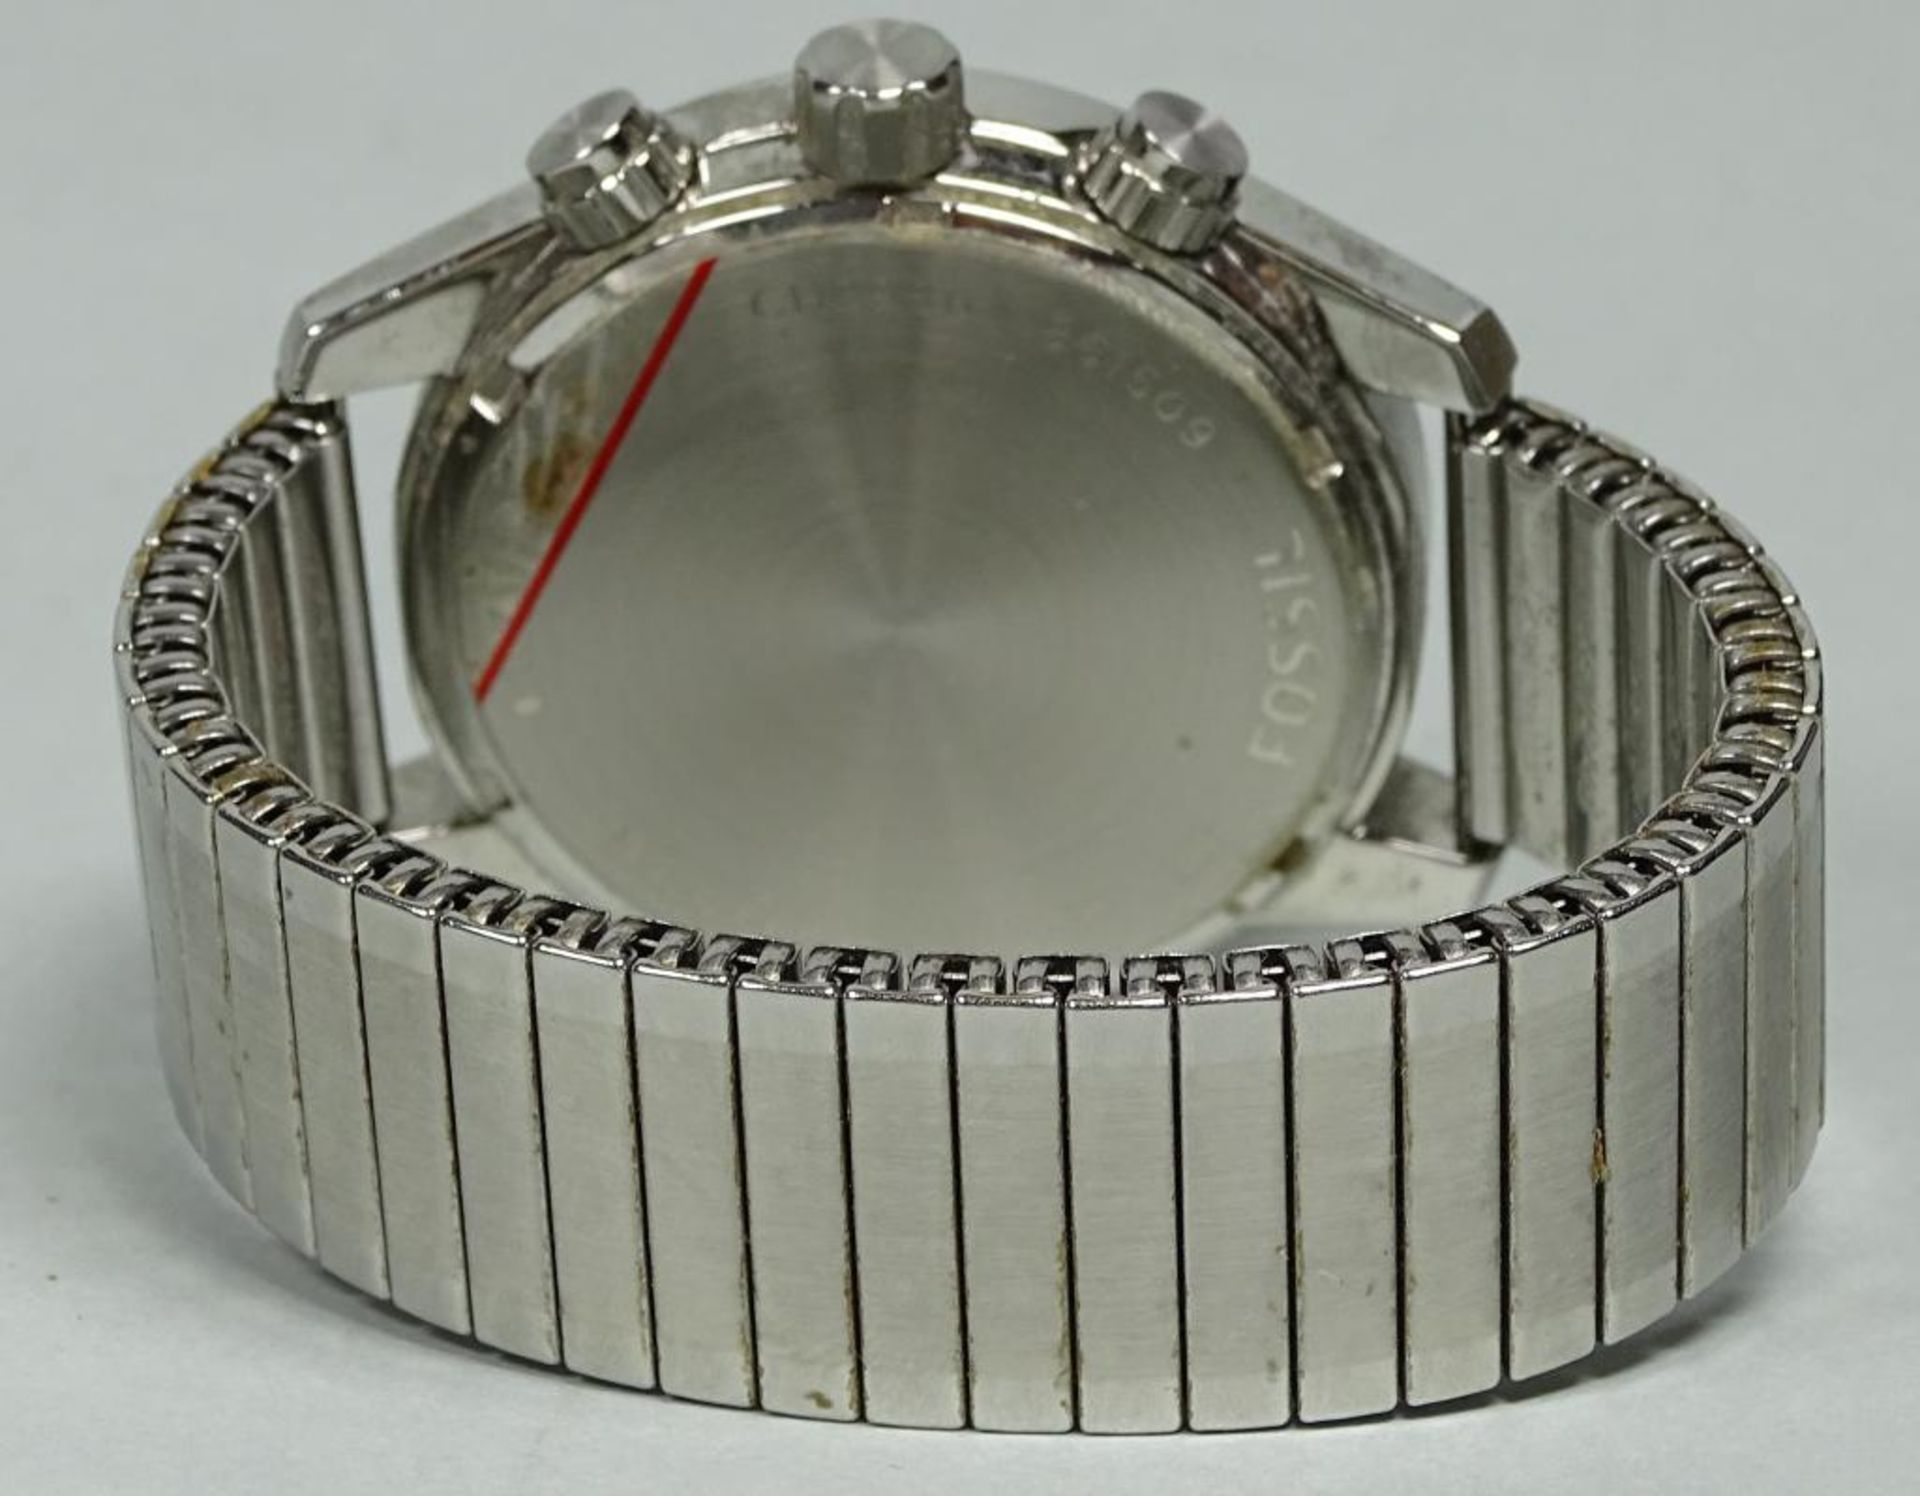 Herren Armbanduhr "Fossil", Choachman,wohl ungetragen,Lagerungsspuren,d-44mm,Quartz, - Bild 4 aus 5